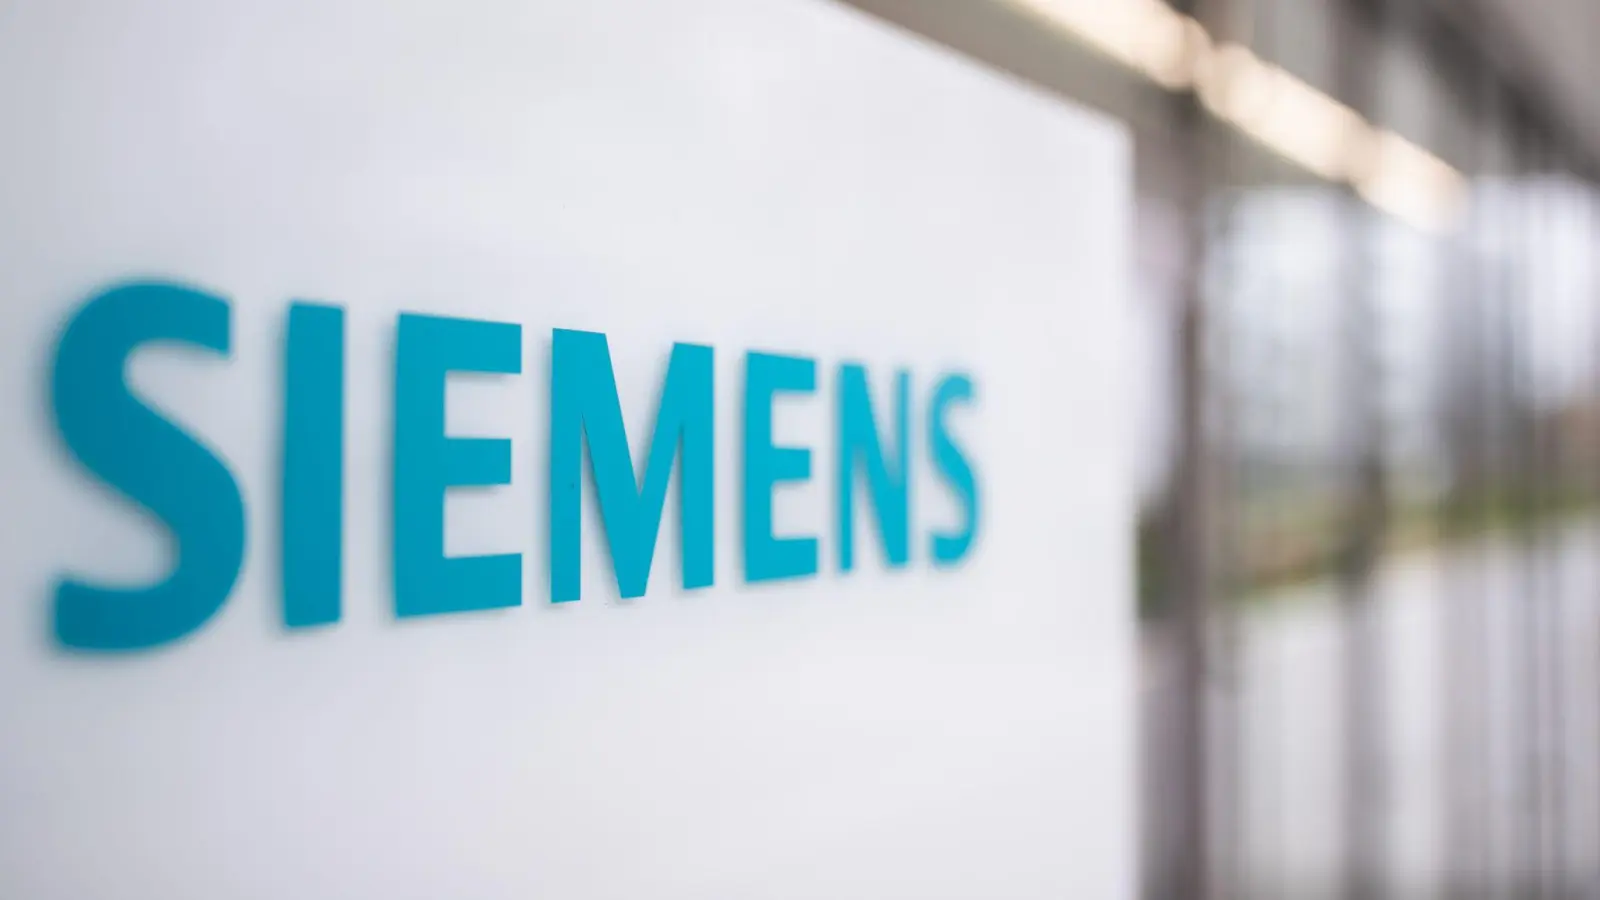 Das Logo von Siemens auf einer Stele am Eingang eines Bürogebäudes auf dem Siemens Campus. (Foto: Daniel Karmann/dpa/Archivbild)